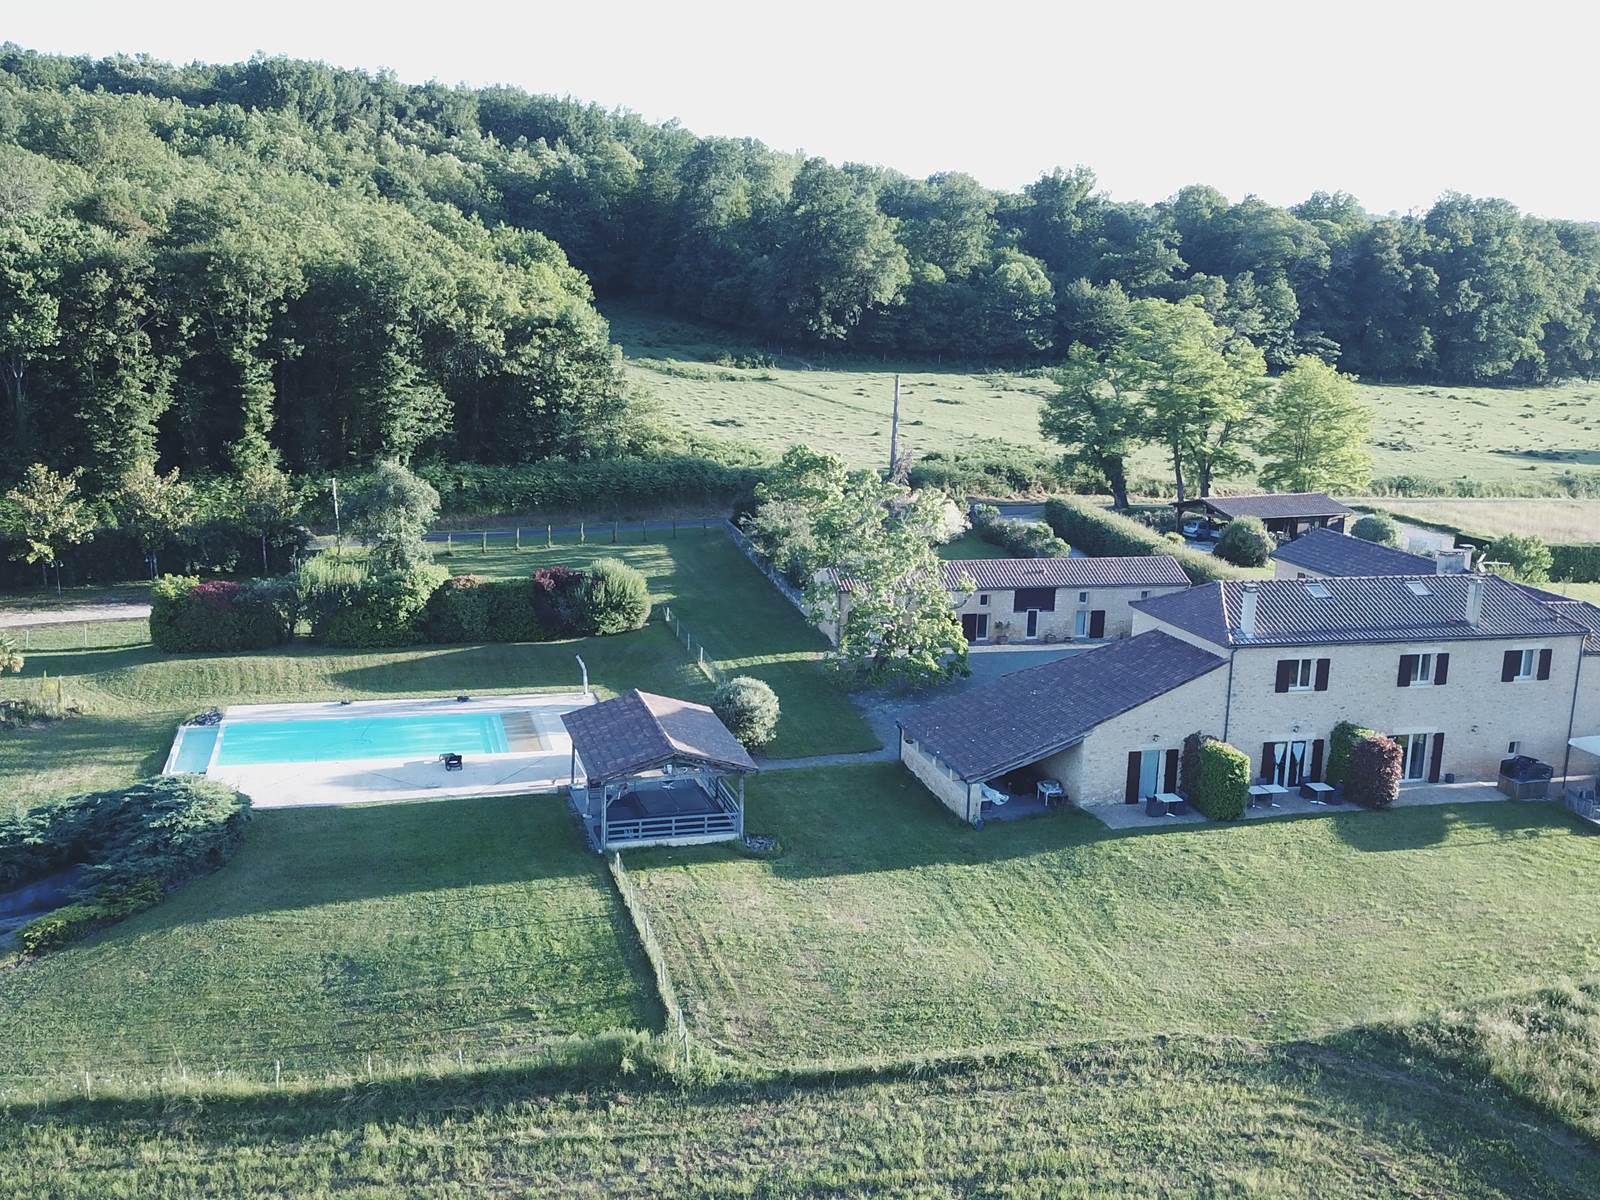 DOMAINE DU CHAMP DE L'HOSTE - maison d'hôtes à Larzac 24170 - domaine du champ de l'Hoste - piscine - Dordogne - location gîte - location maison de vacances - piscine - Vue du domaine par notre drone.